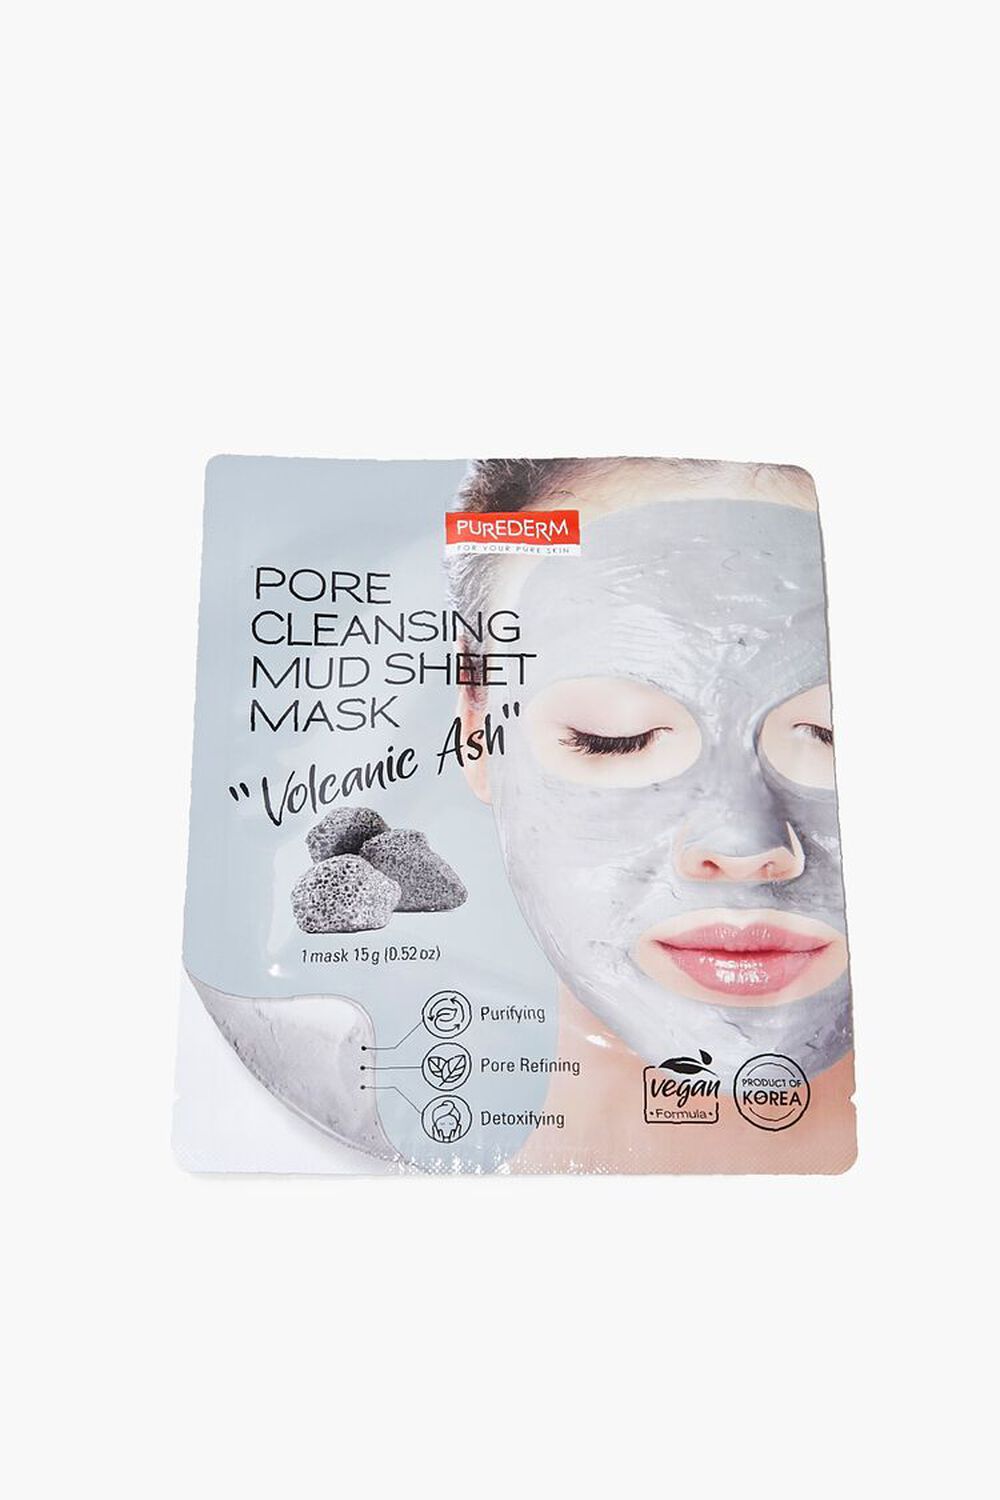 Pore Cleansing Mud Sheet Mask, image 1